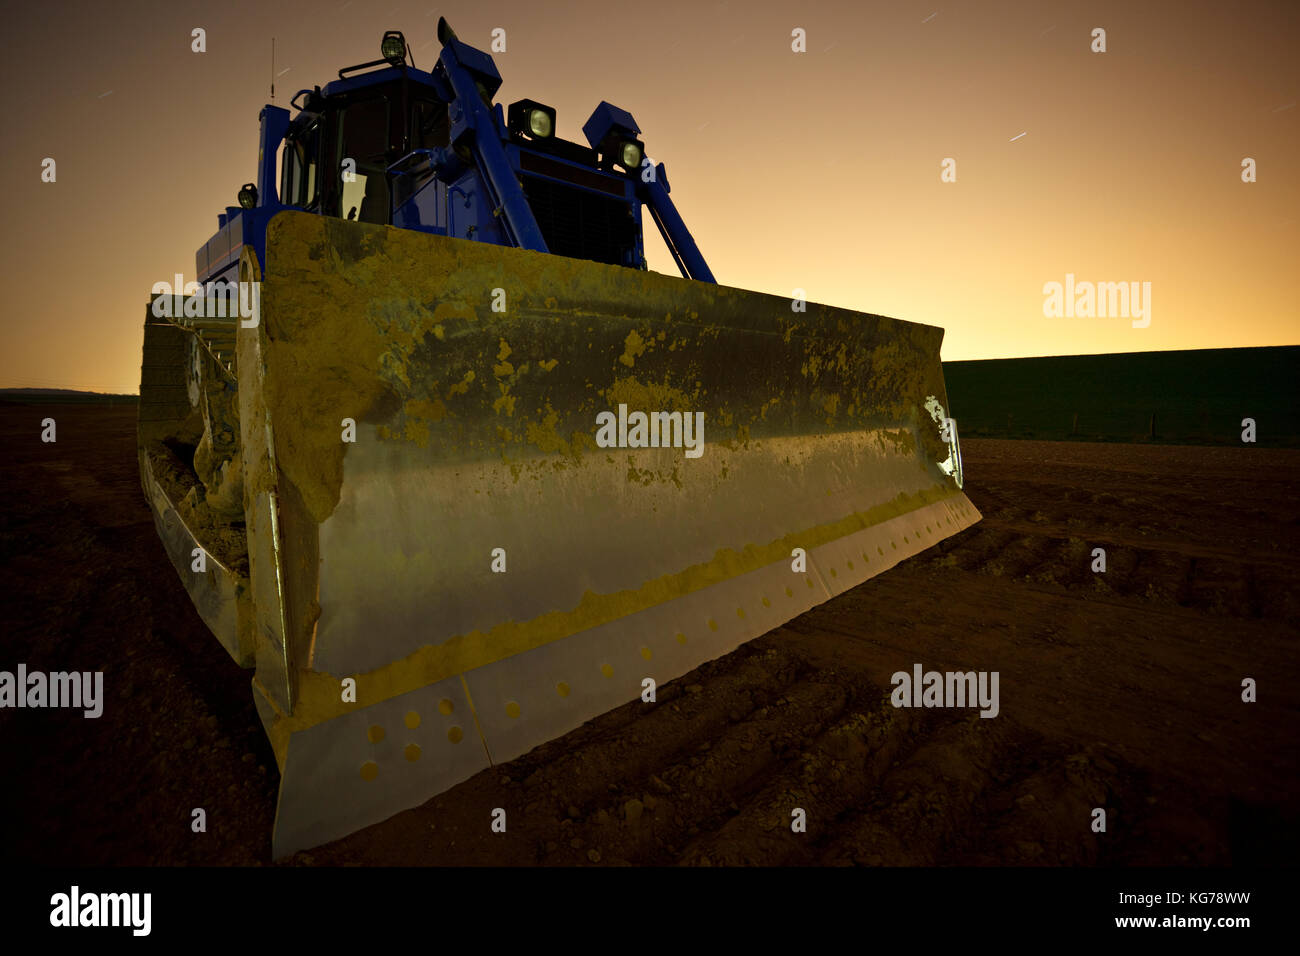 Night shot of a big bulldozer. Stock Photo